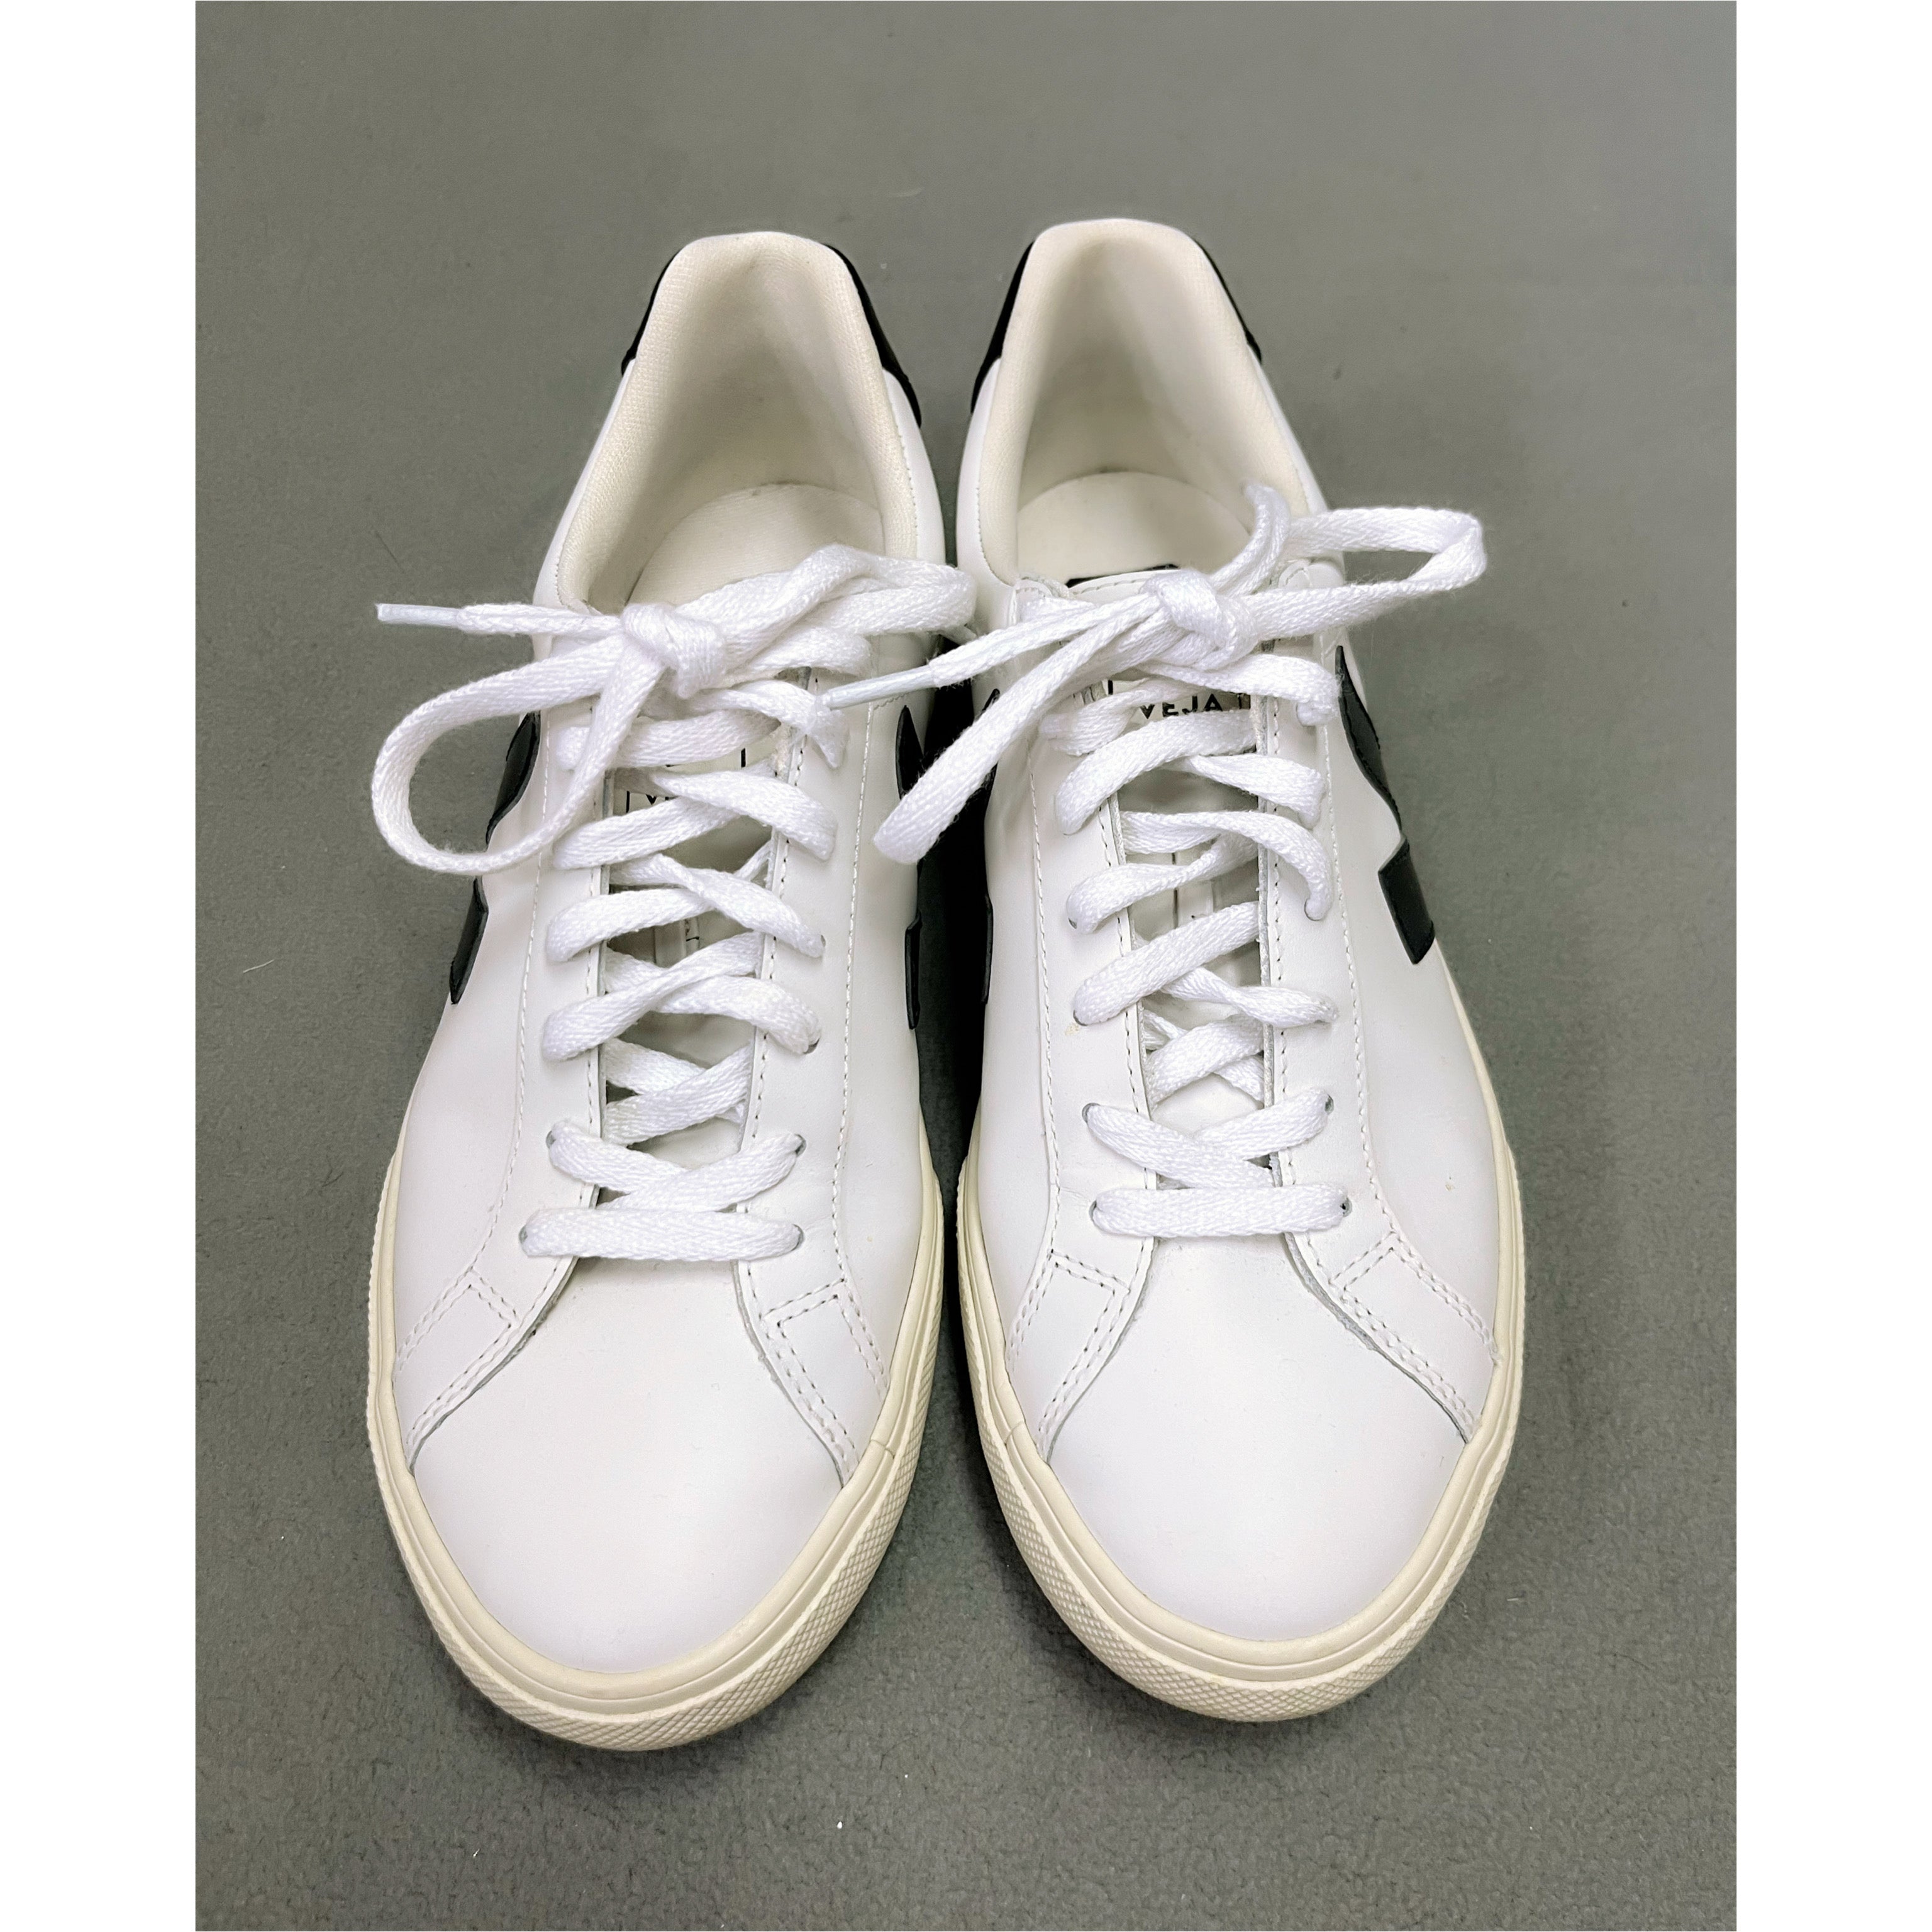 Veja white & black Esplar low sneakers, size 8